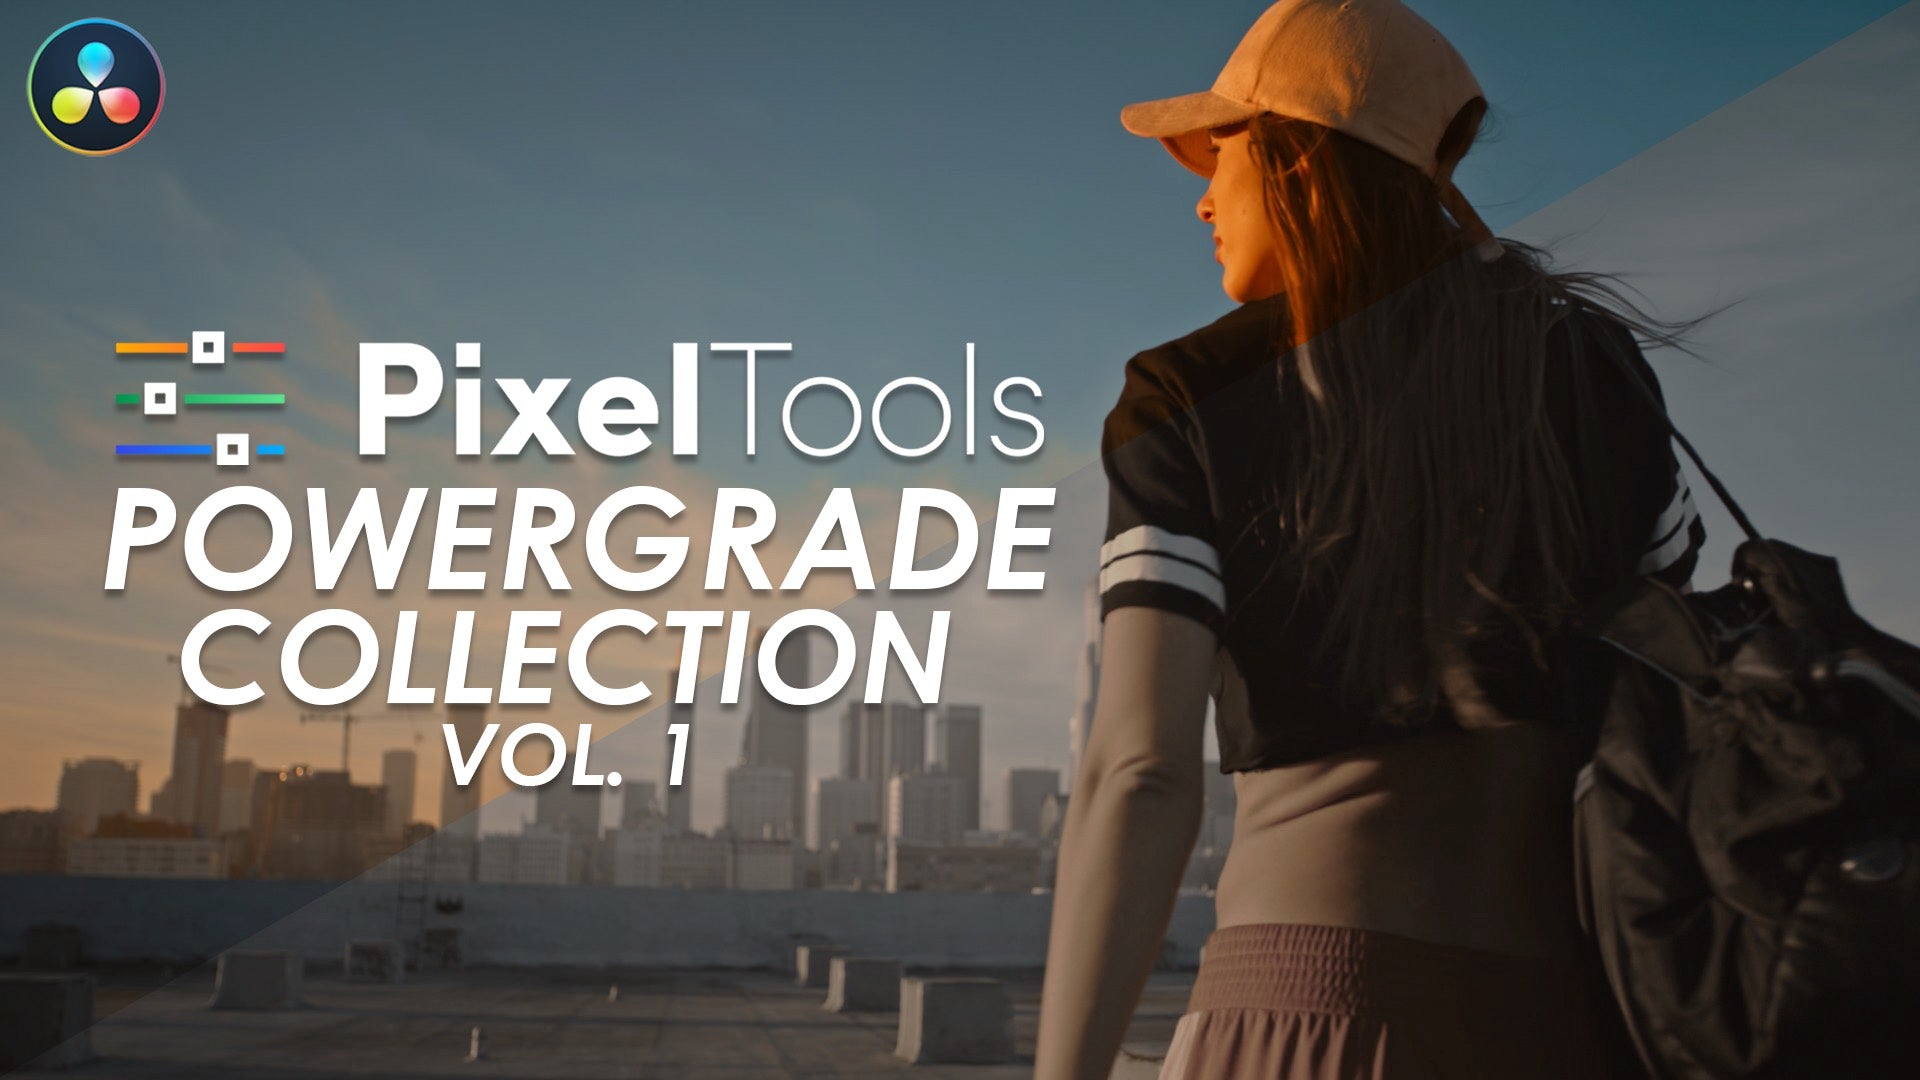 PixelTools Vol. 1 PowerGrade Collection